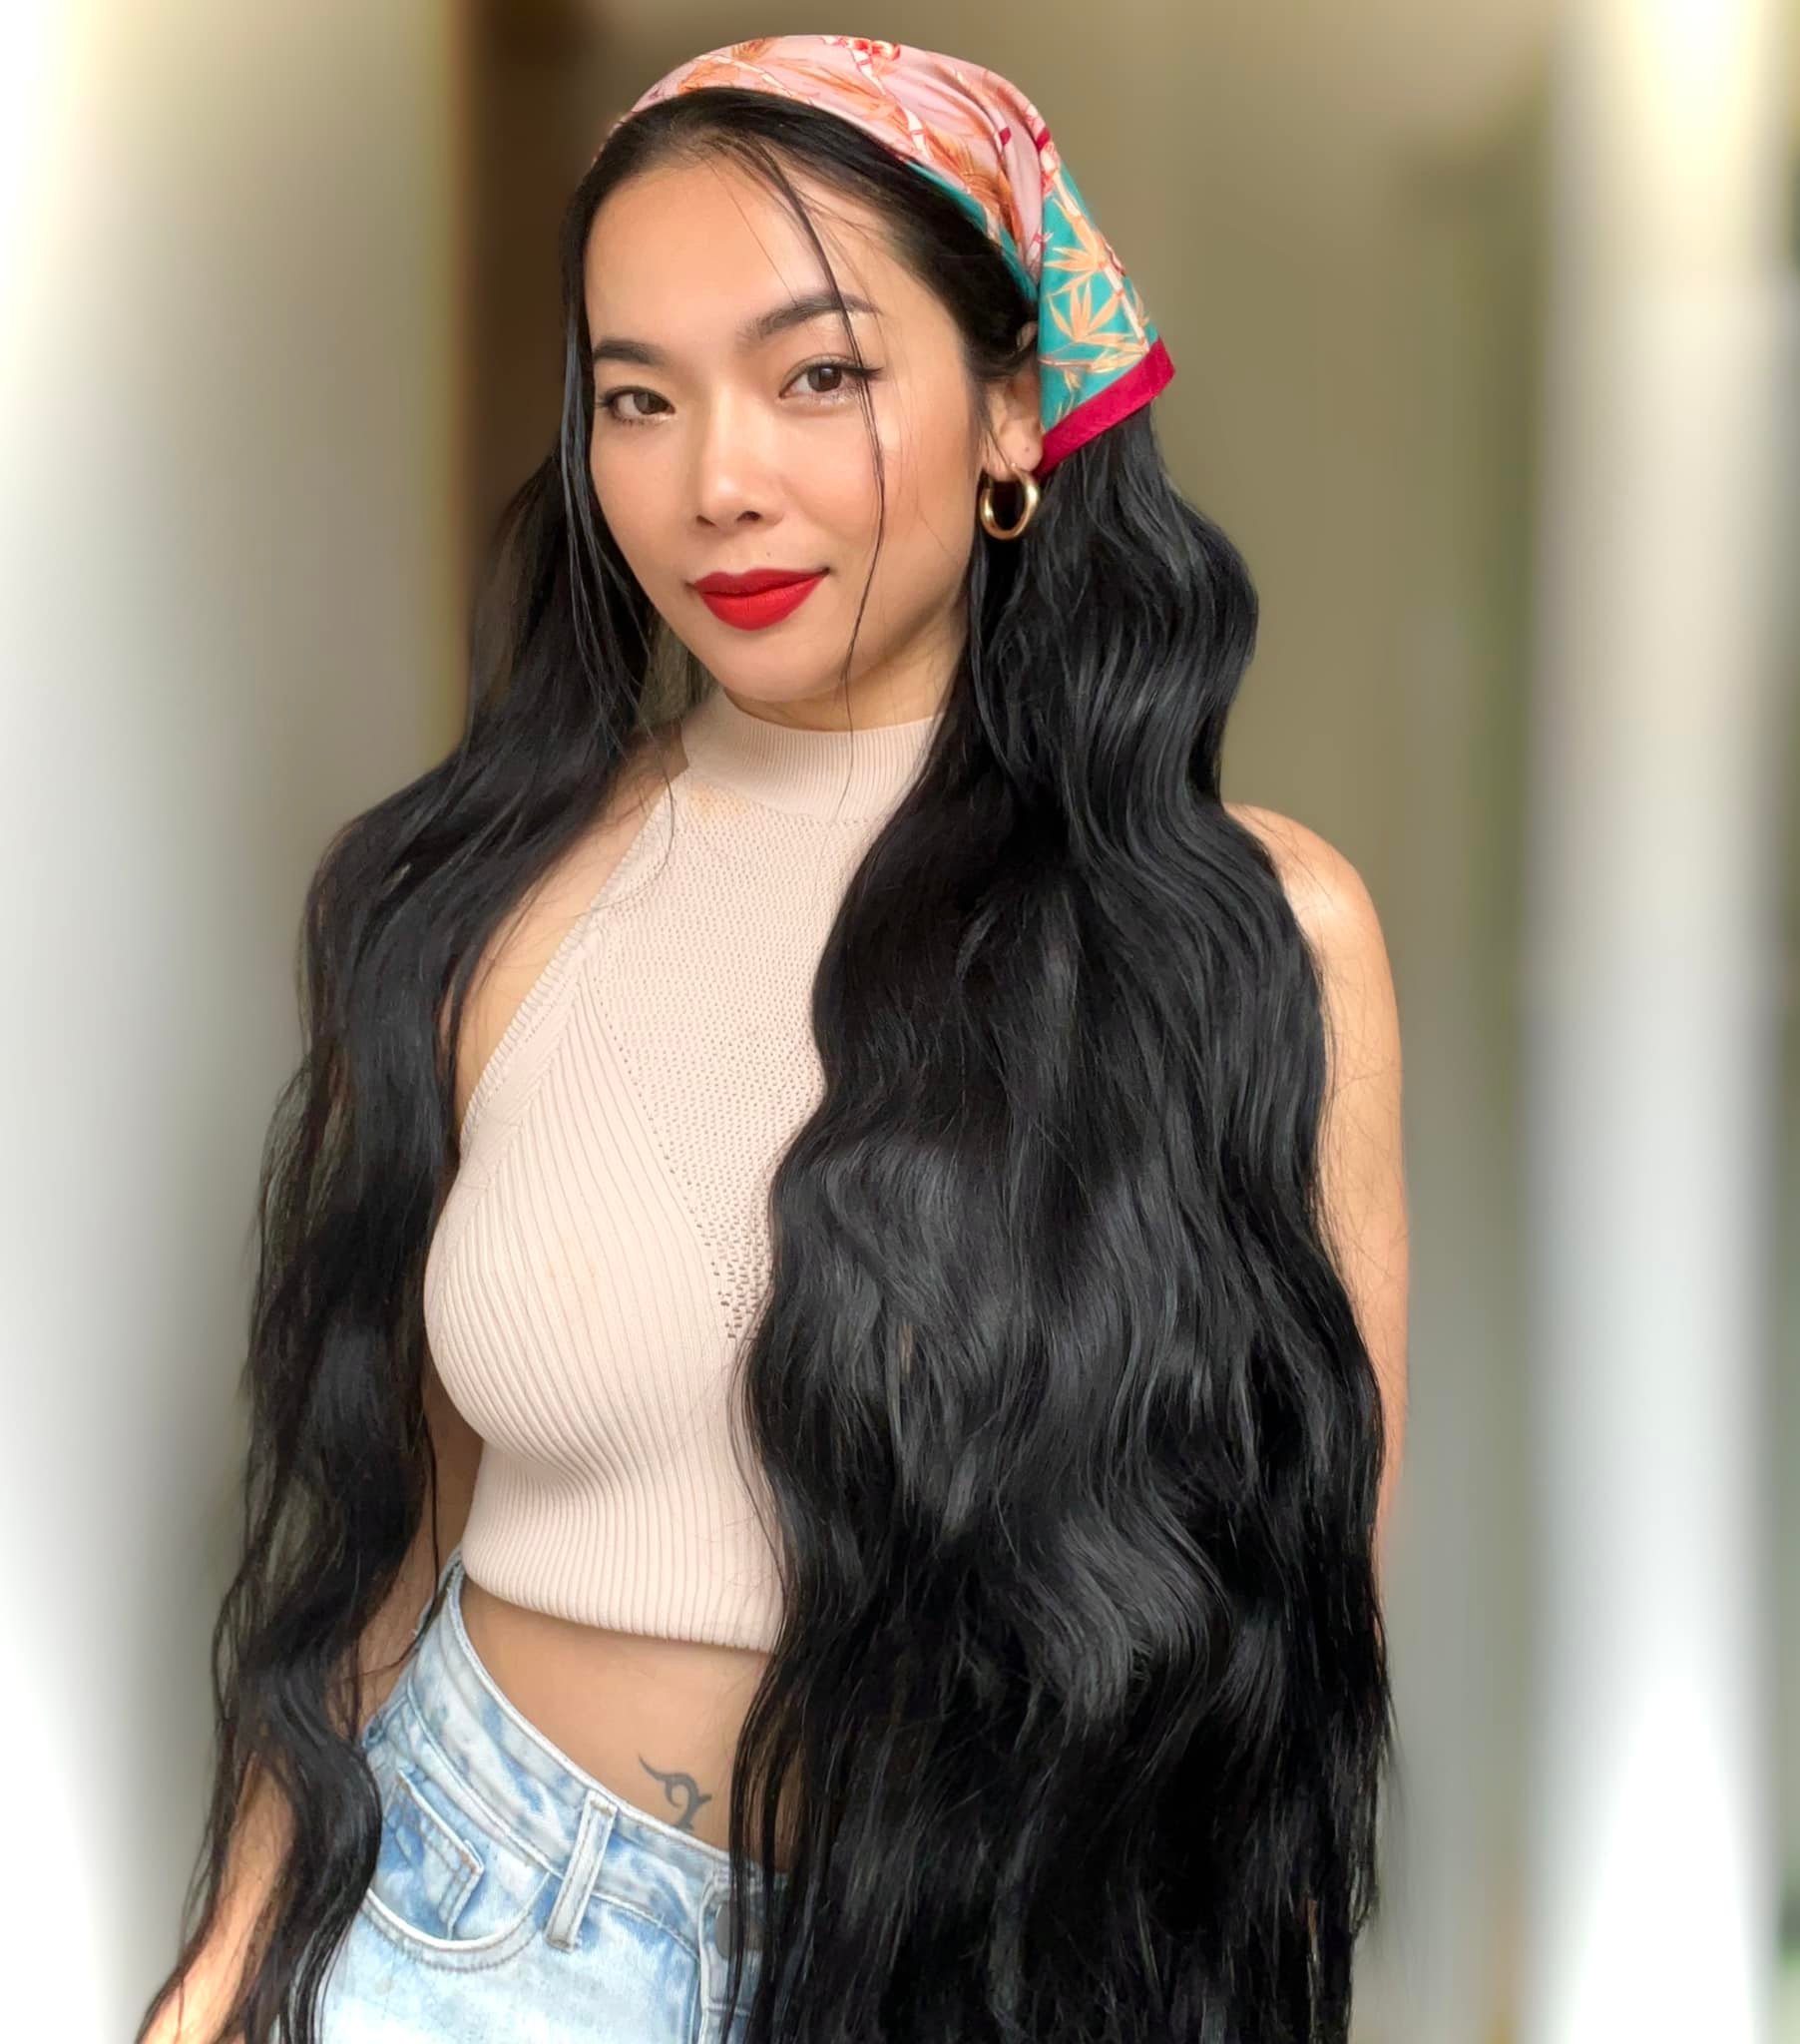 Hiện tại, Happi là 1 trong những beauty blogger người Việt truyền cảm hứng cho các bạn trẻ với câu chuyện đi tìm thành công của mình